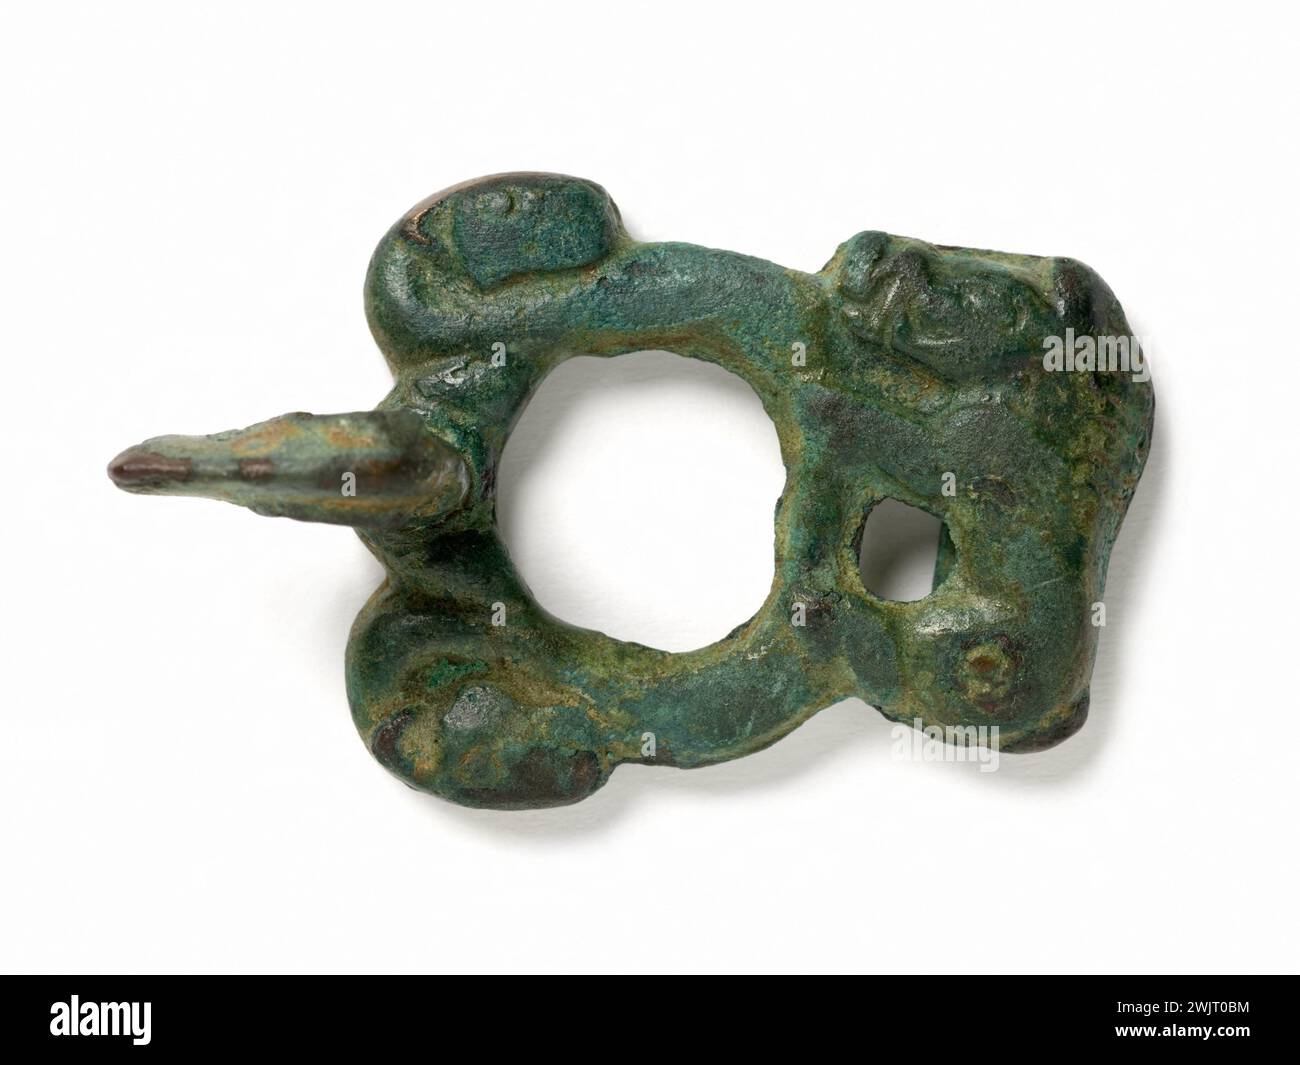 Schnalle. Bronze, Nordwest-China. 5.-4. Jahrhundert vor J.C. Paris, Cernuschi Museum. Ein stilisierter Greifkopf dient als Haken für diese Schlaufe, die in einer Biventilform hergestellt wird. Zwei Ziegenköpfe erscheinen entlang der Schleife. Andererseits bildet der Ring, mit dem der Gürtel befestigt wird, ein Rechteck und nimmt die Merkmale einer plötzlichen Schraffur an, die seine Mähne markiert. Der Rückwärtsgang ist leicht konkav. Gürtelschnalle, Gürtelschnalle, Bronze, Nordwestchina, Nordwestporzellan, Tier, China Stockfoto